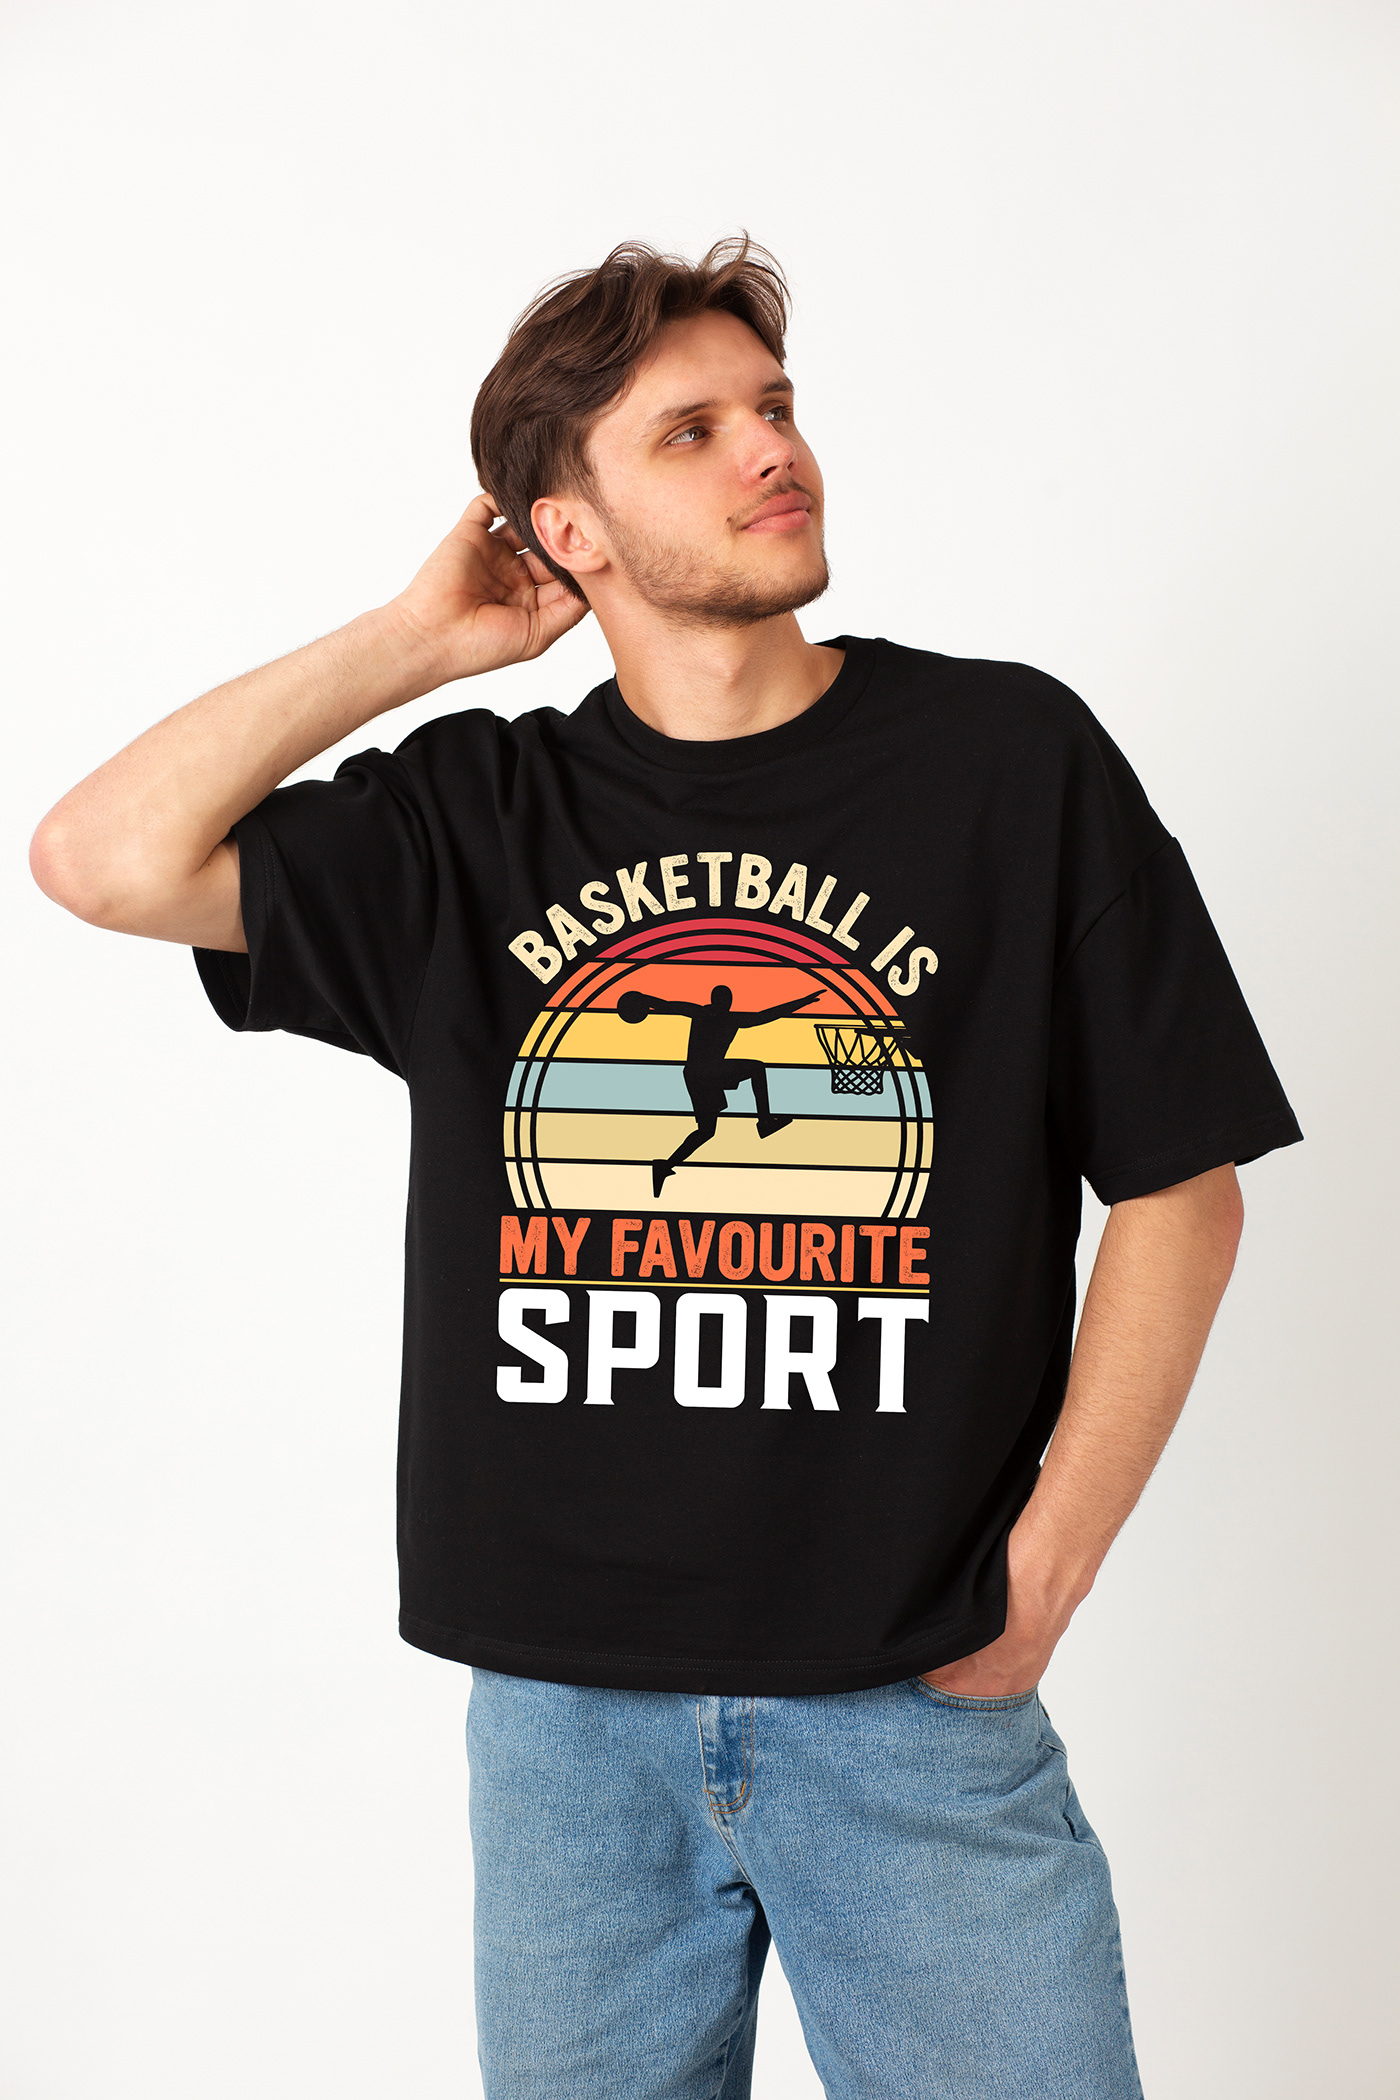 Basketball t-shirt design Tshirt Design tshirts T-Shirt Design sports t-shirt design custom t-shirt design Typography T-shirt t-shirts basketball t-shirt Retro vintage t-shirt